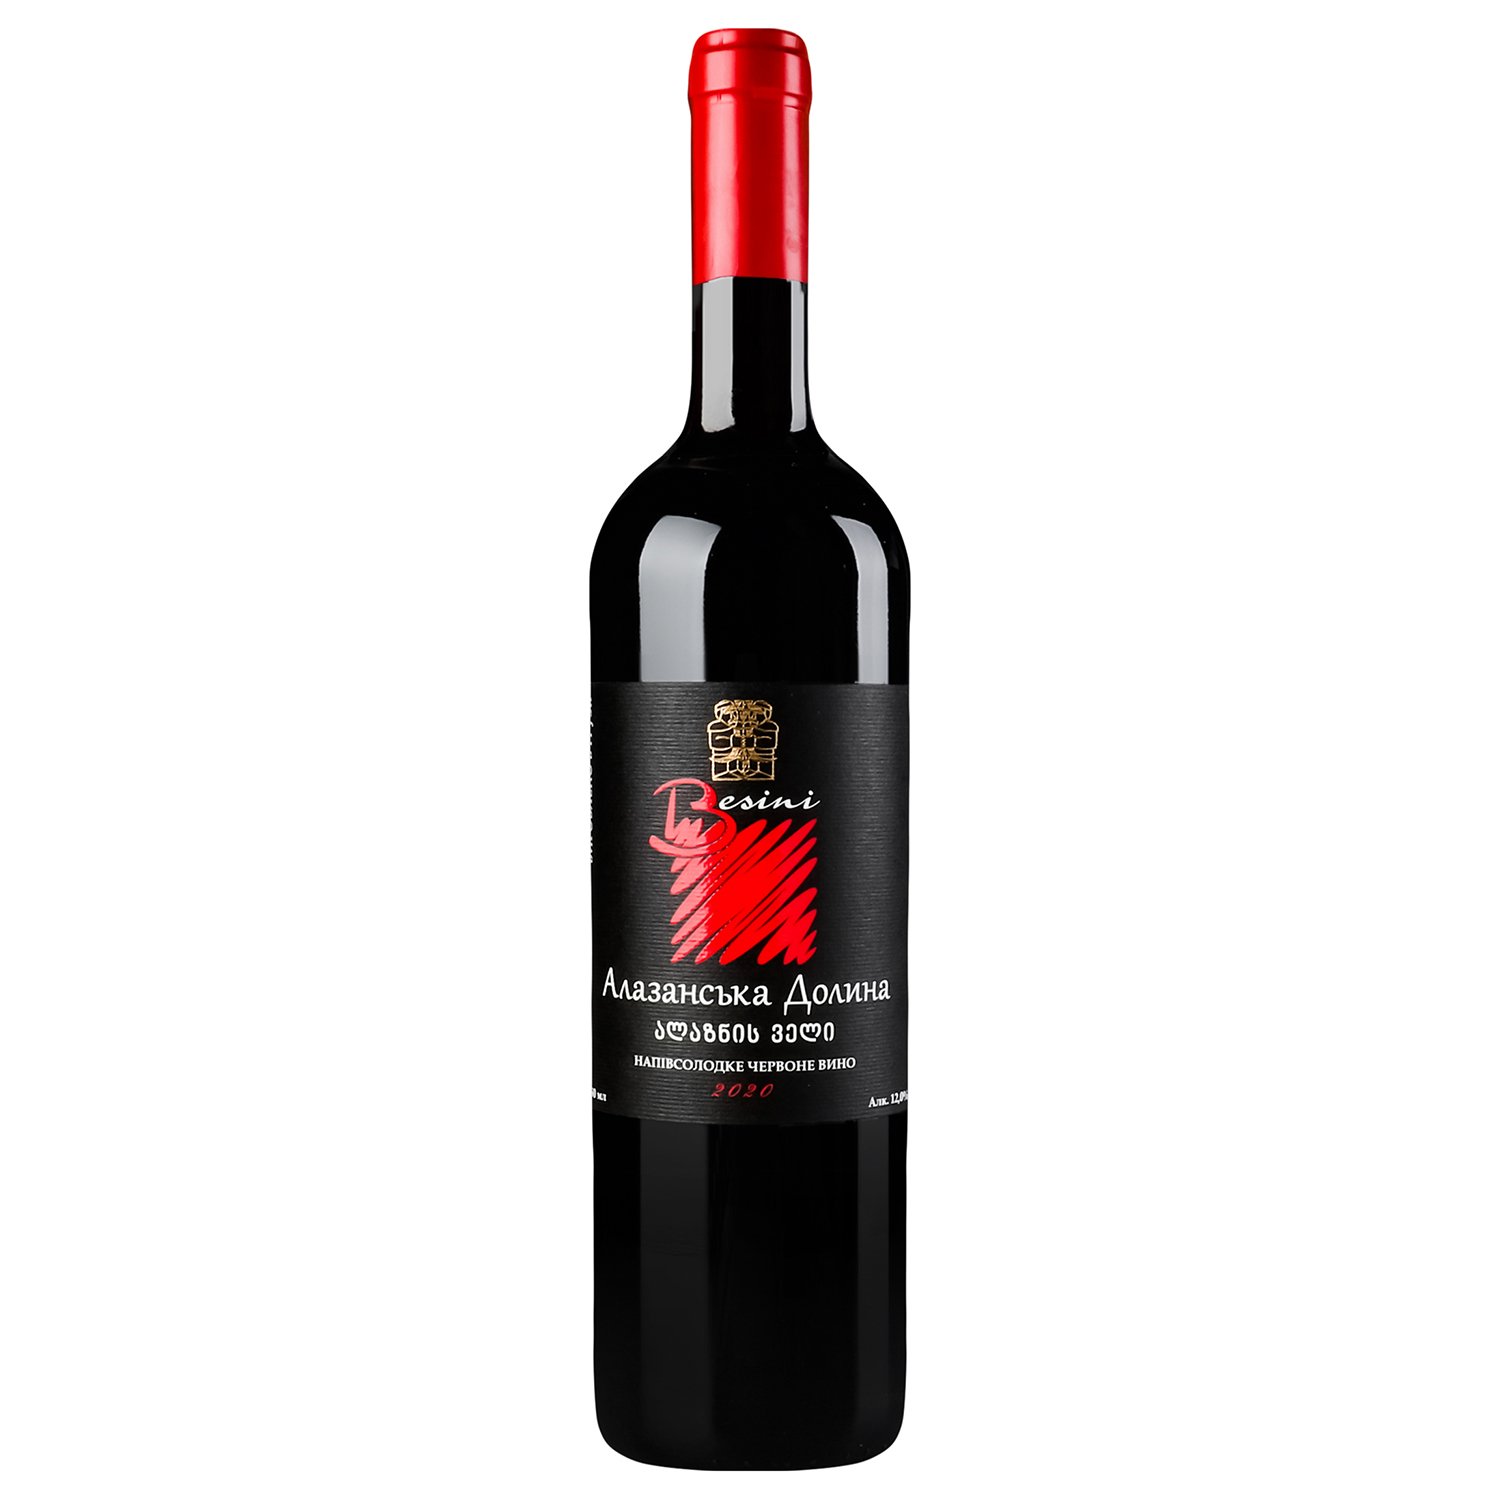 Вино Besini Alazani Valley, красное, полусладкое, 12%, 0,75 л (8000016900850) - фото 1